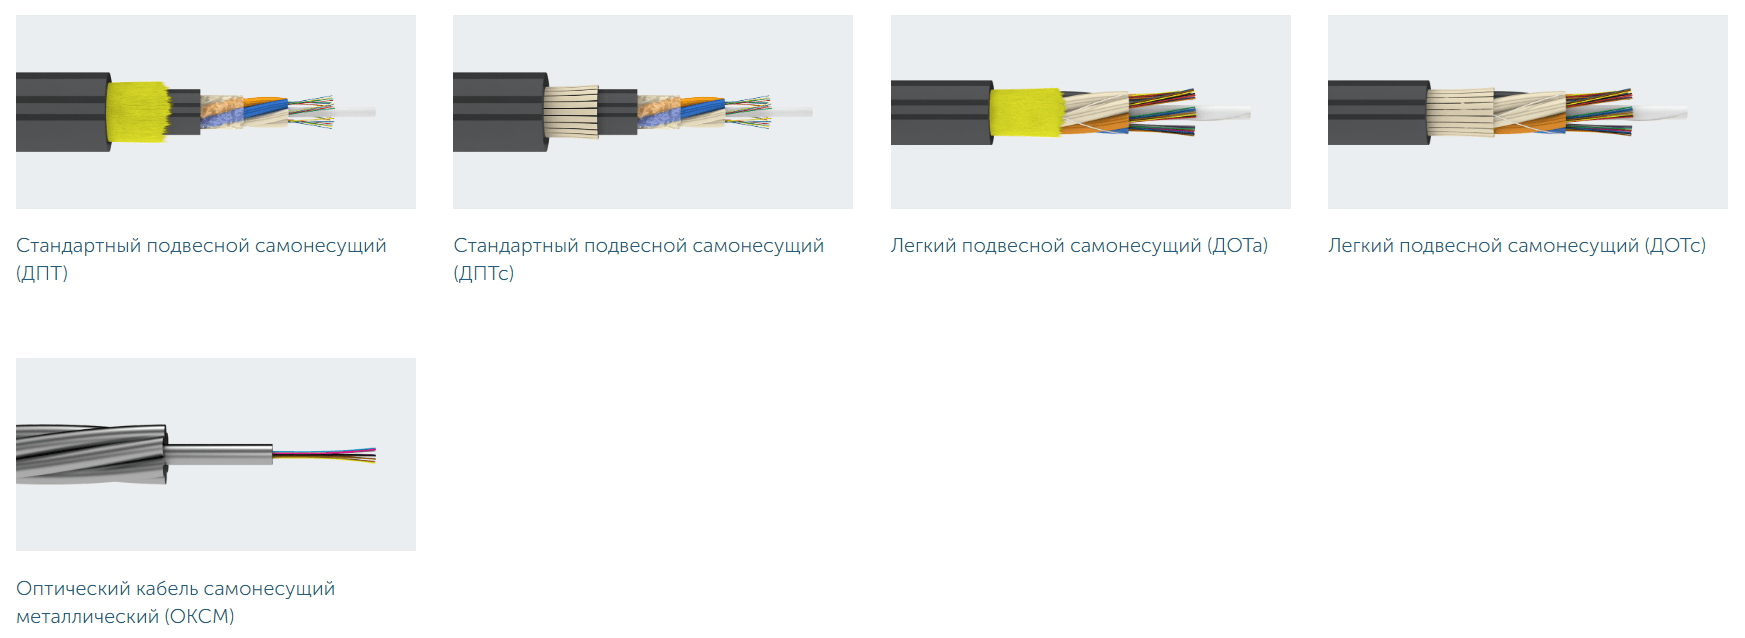 Типы подвесного самонесущего оптического кабеля